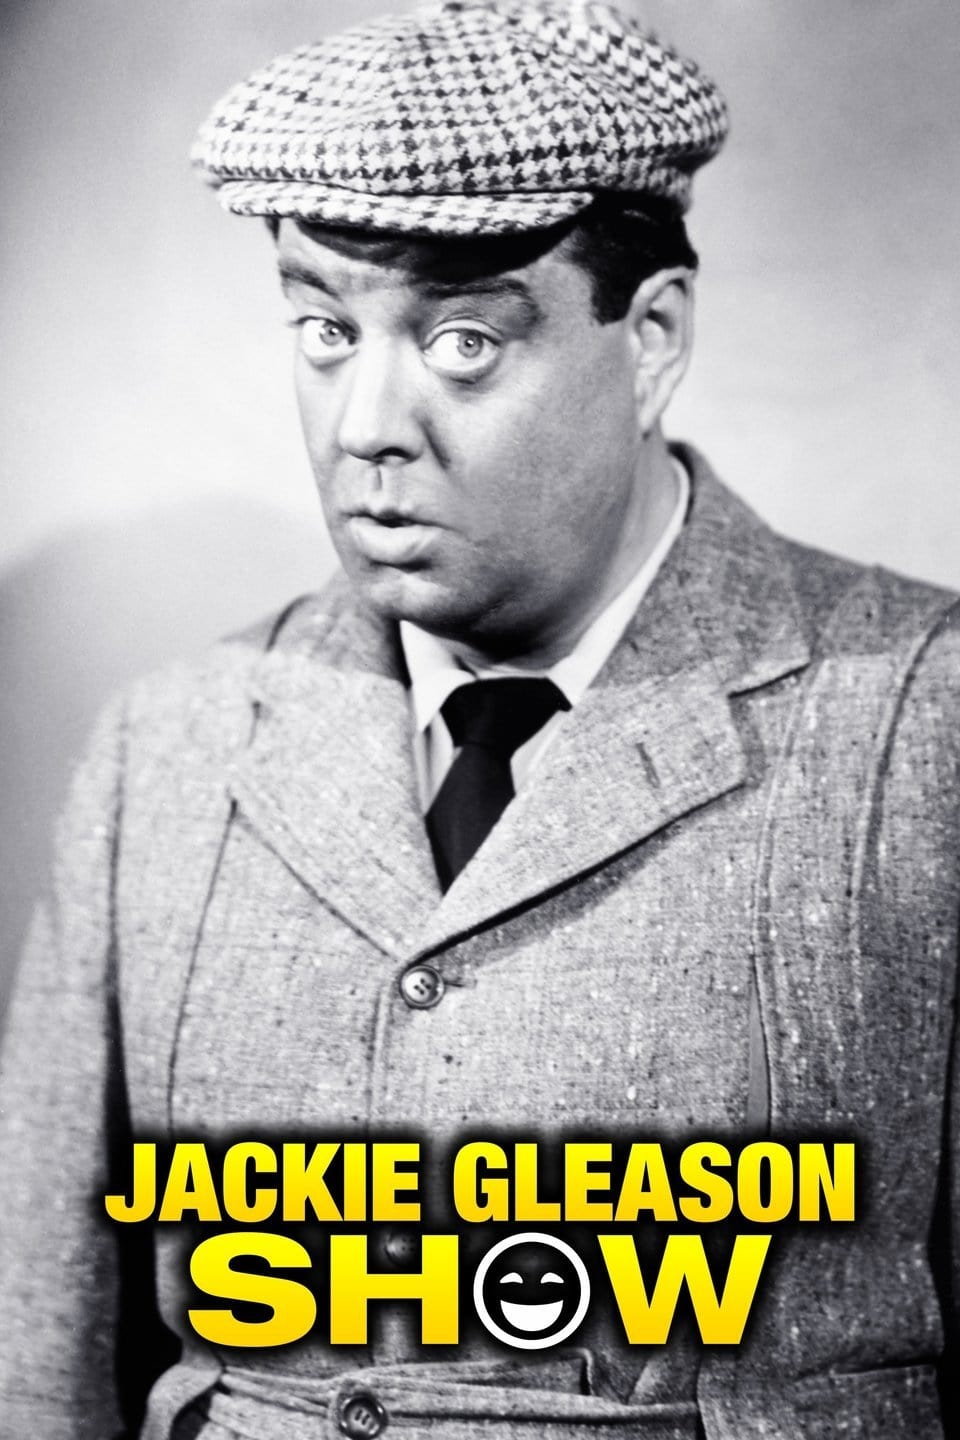 The Jackie Gleason Show (1966)